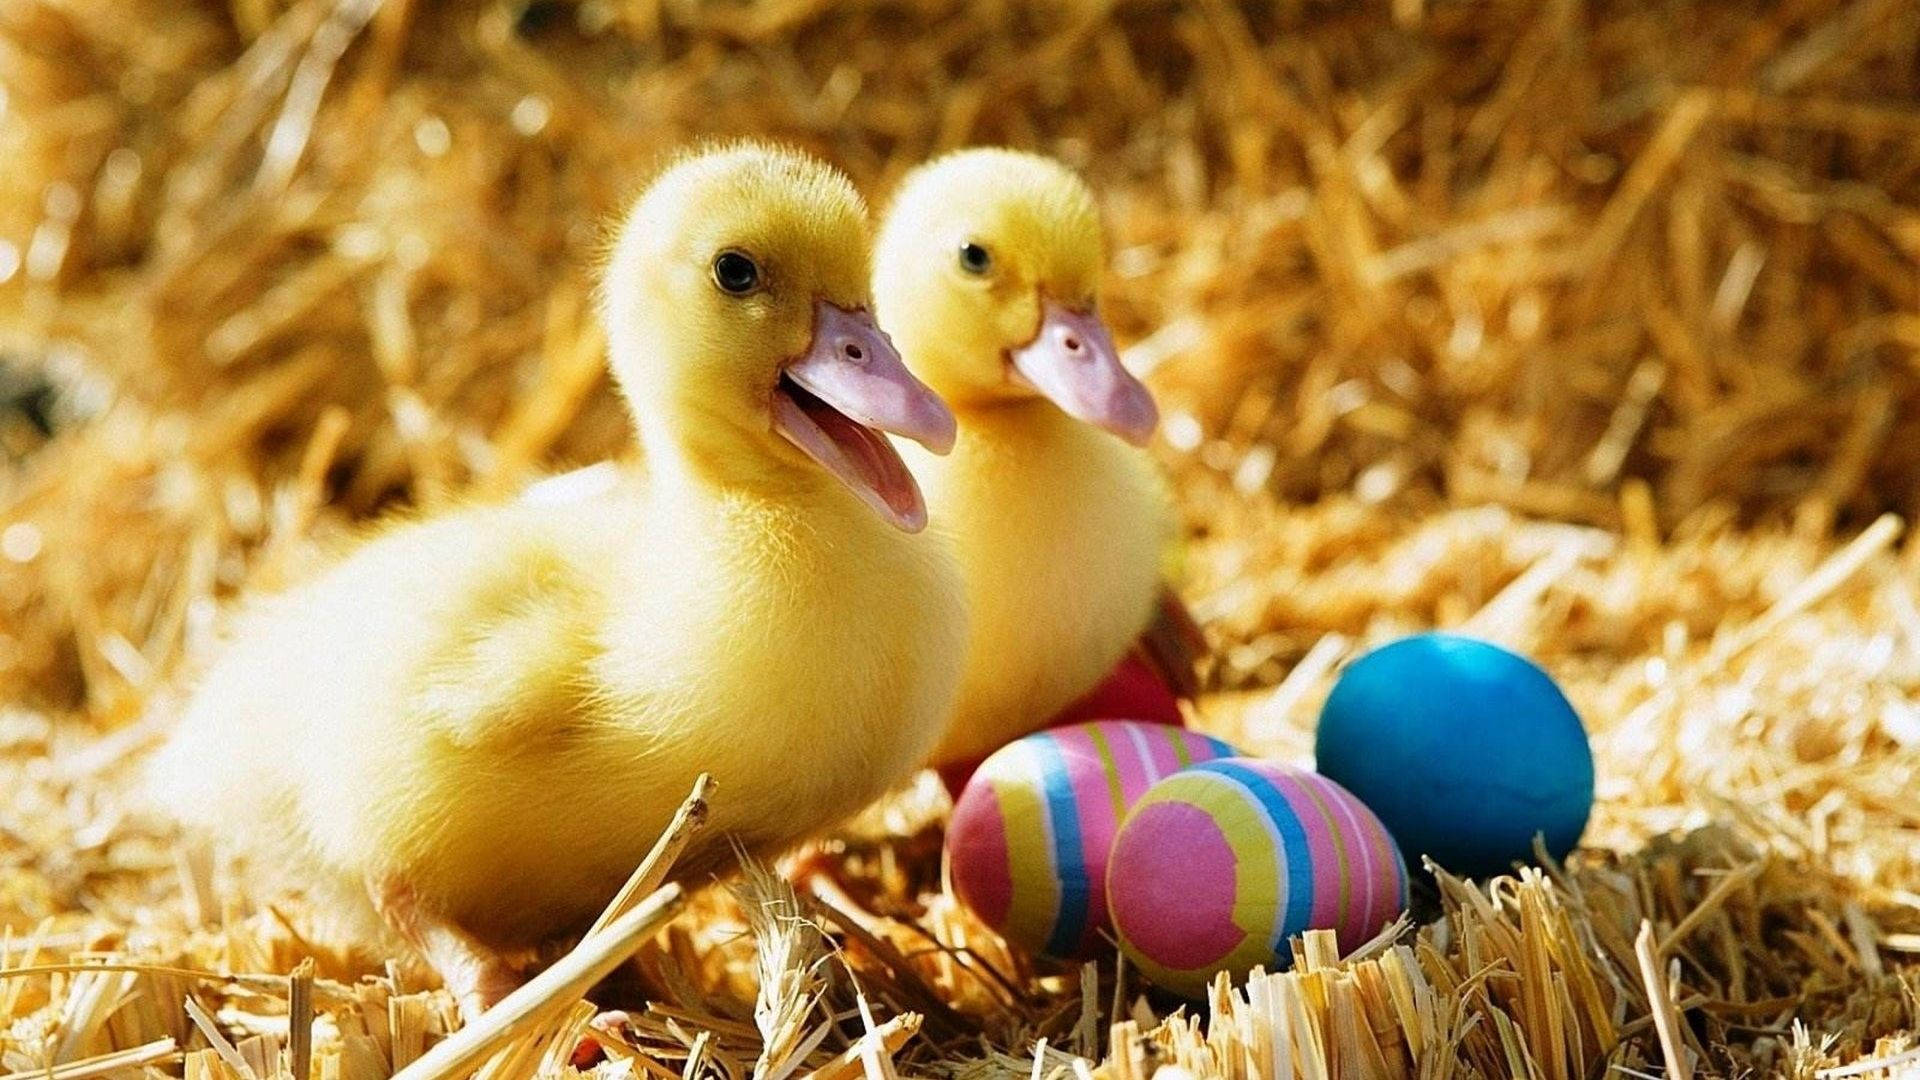 Baby Ducks Easter Eggs Background